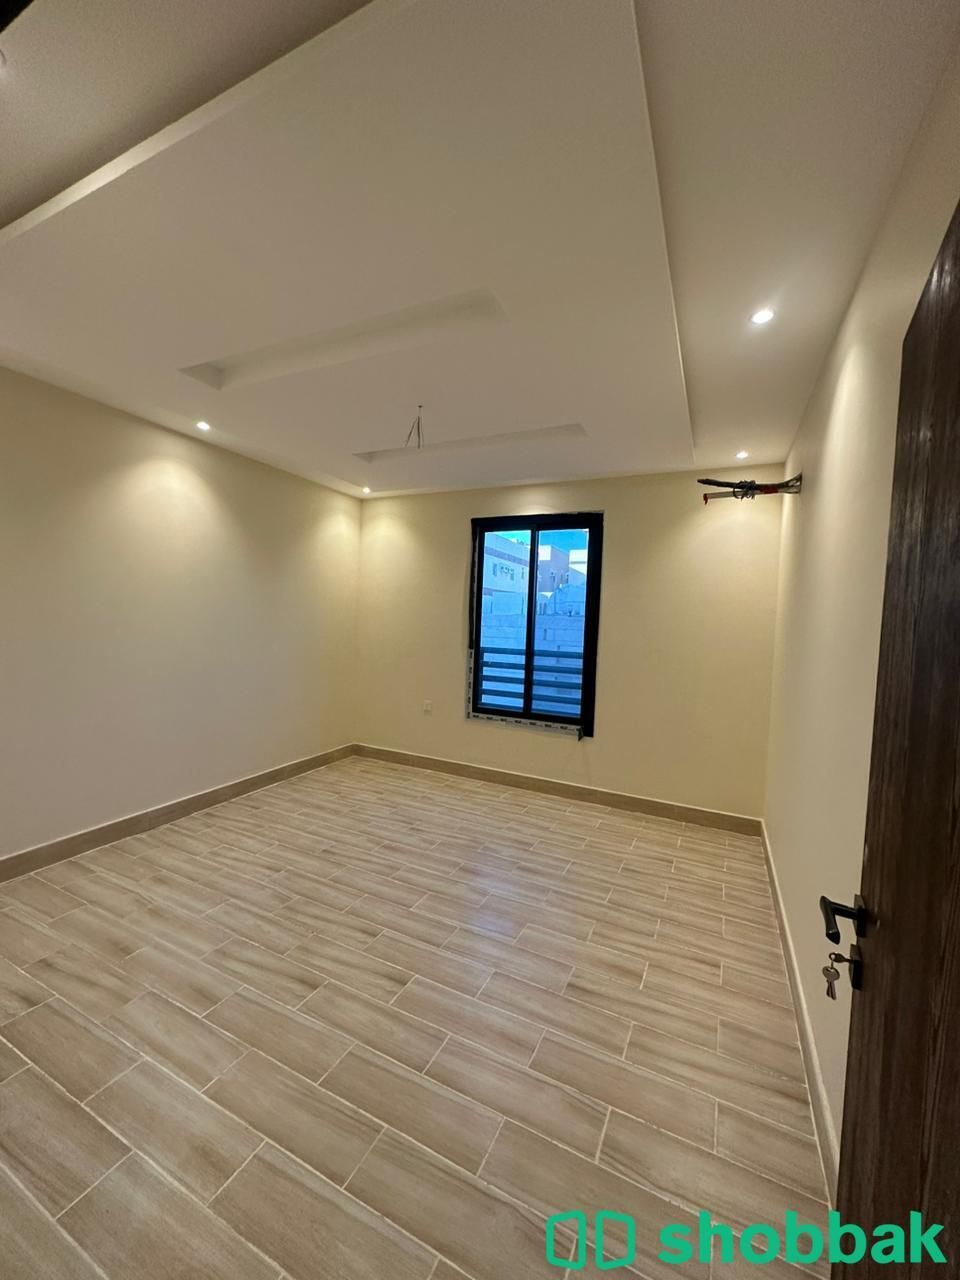 شقة 5 غرف أمامية بمدخلين جديدة جاهزة للسكن تقبل البنك  Shobbak Saudi Arabia